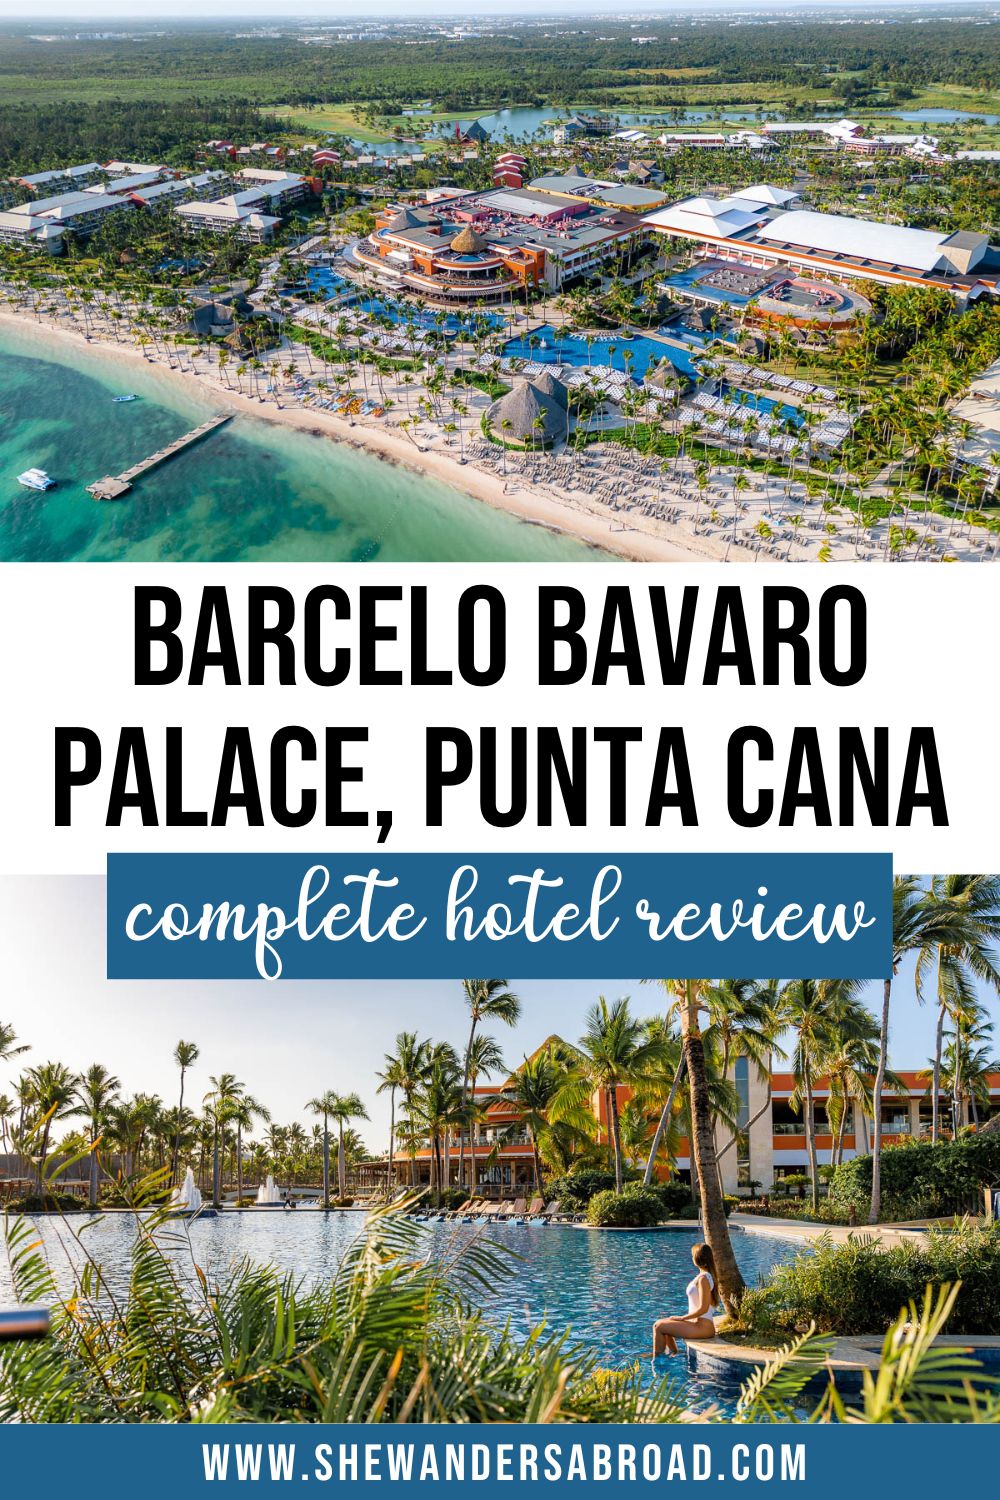 Hotel Review: Barcelo Bavaro Palace, Punta Cana